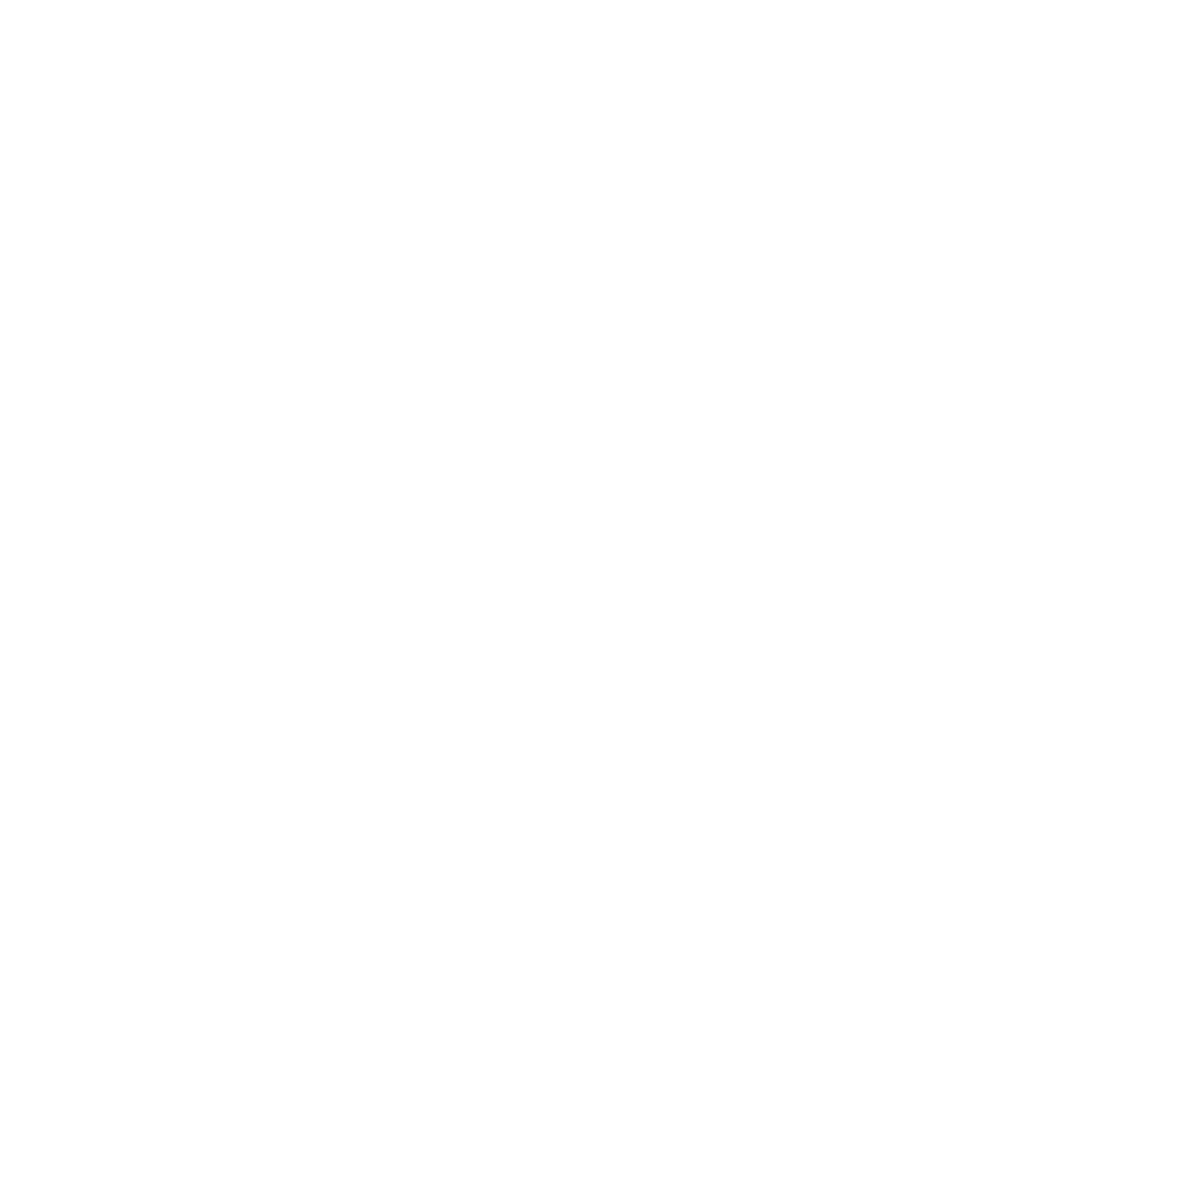 LionLabsGlobal